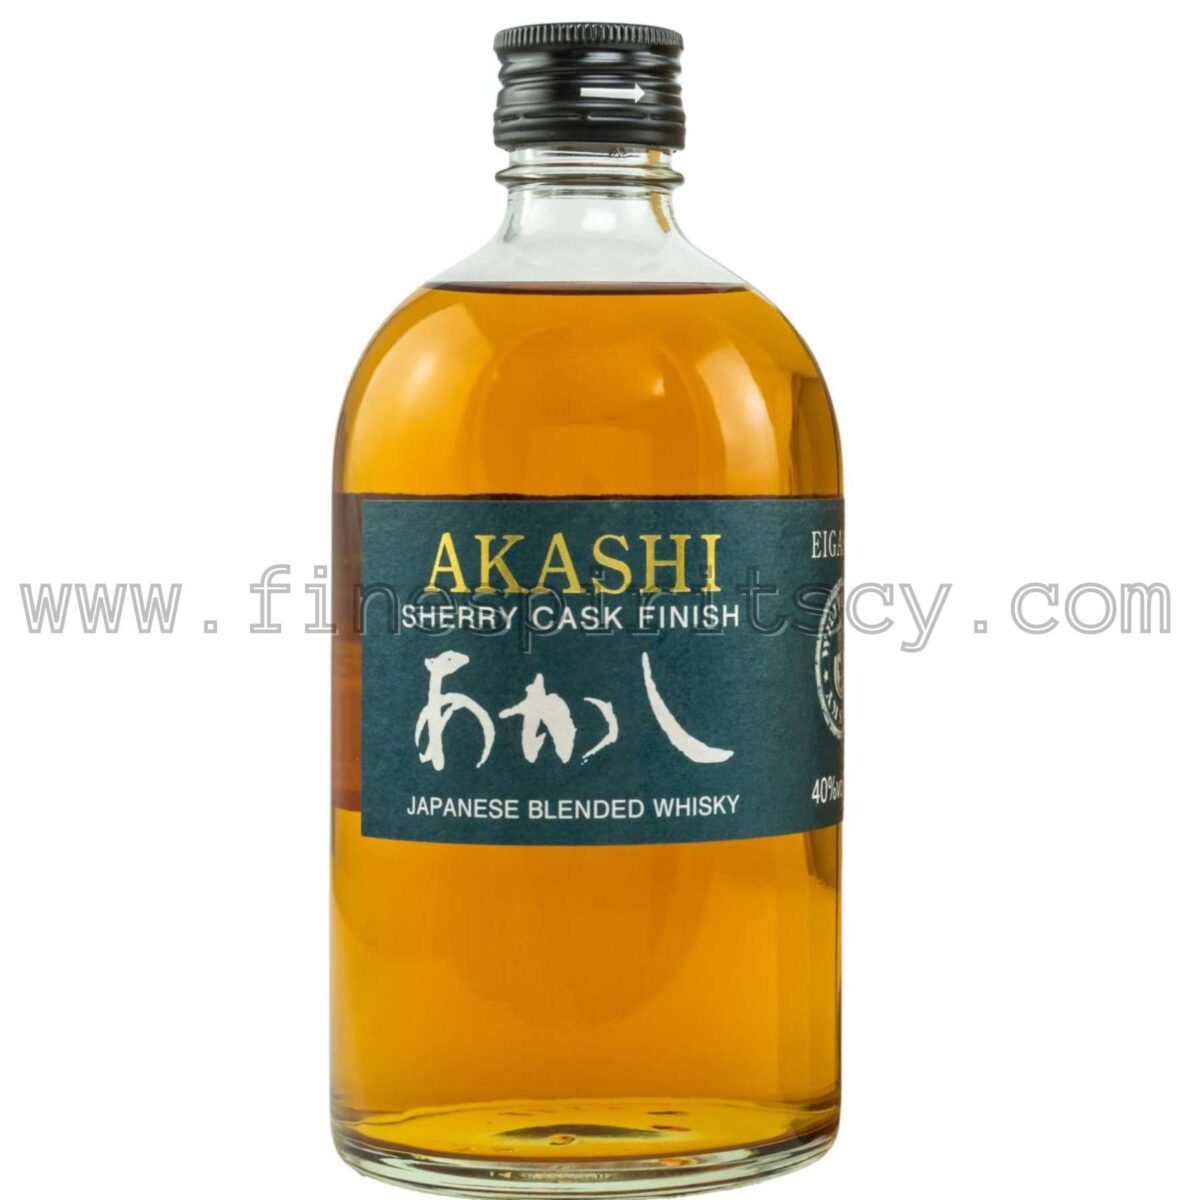 Akashi Sherry Cask Finish Blended FSCY Order Online Shop Now Buy Price Cyprus Europe